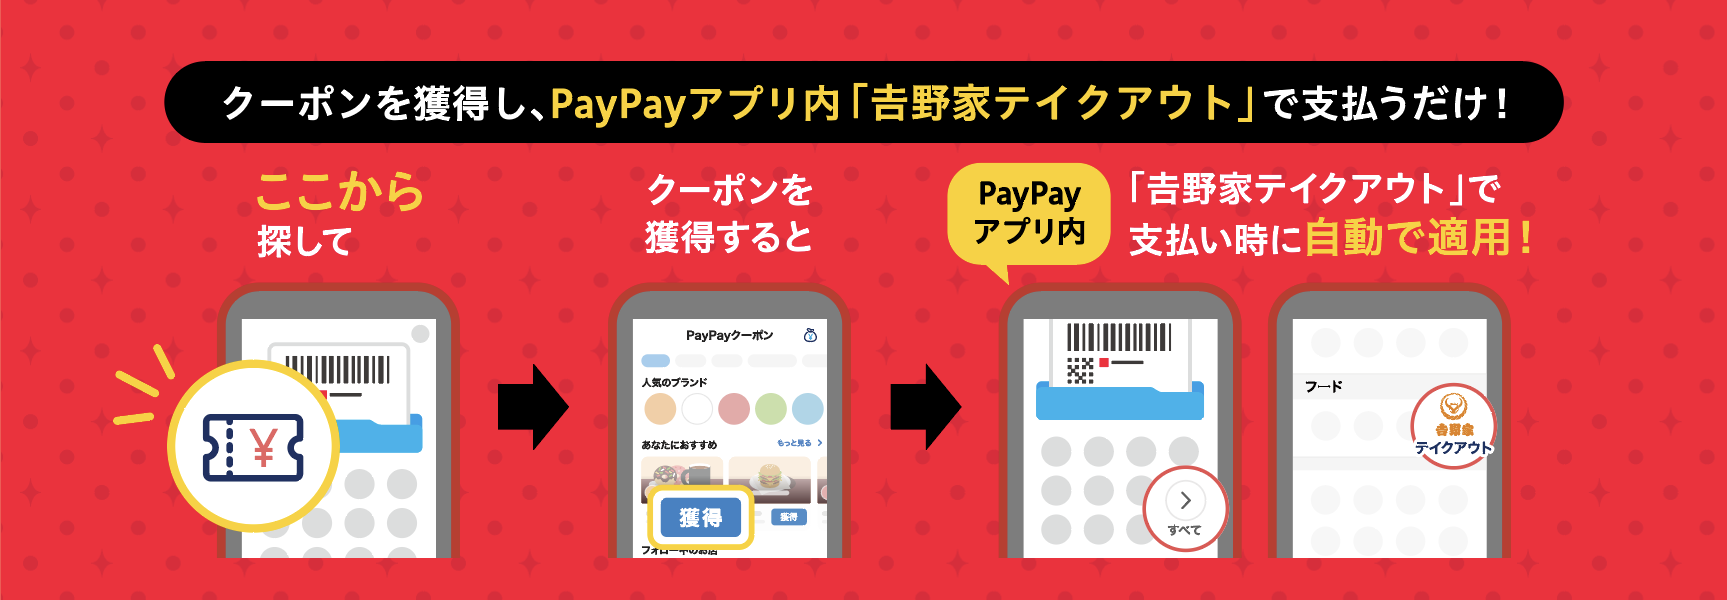 PayPayアプリ内のテイクアウトスマホ予約「吉野家テイクアウト」の利用手順